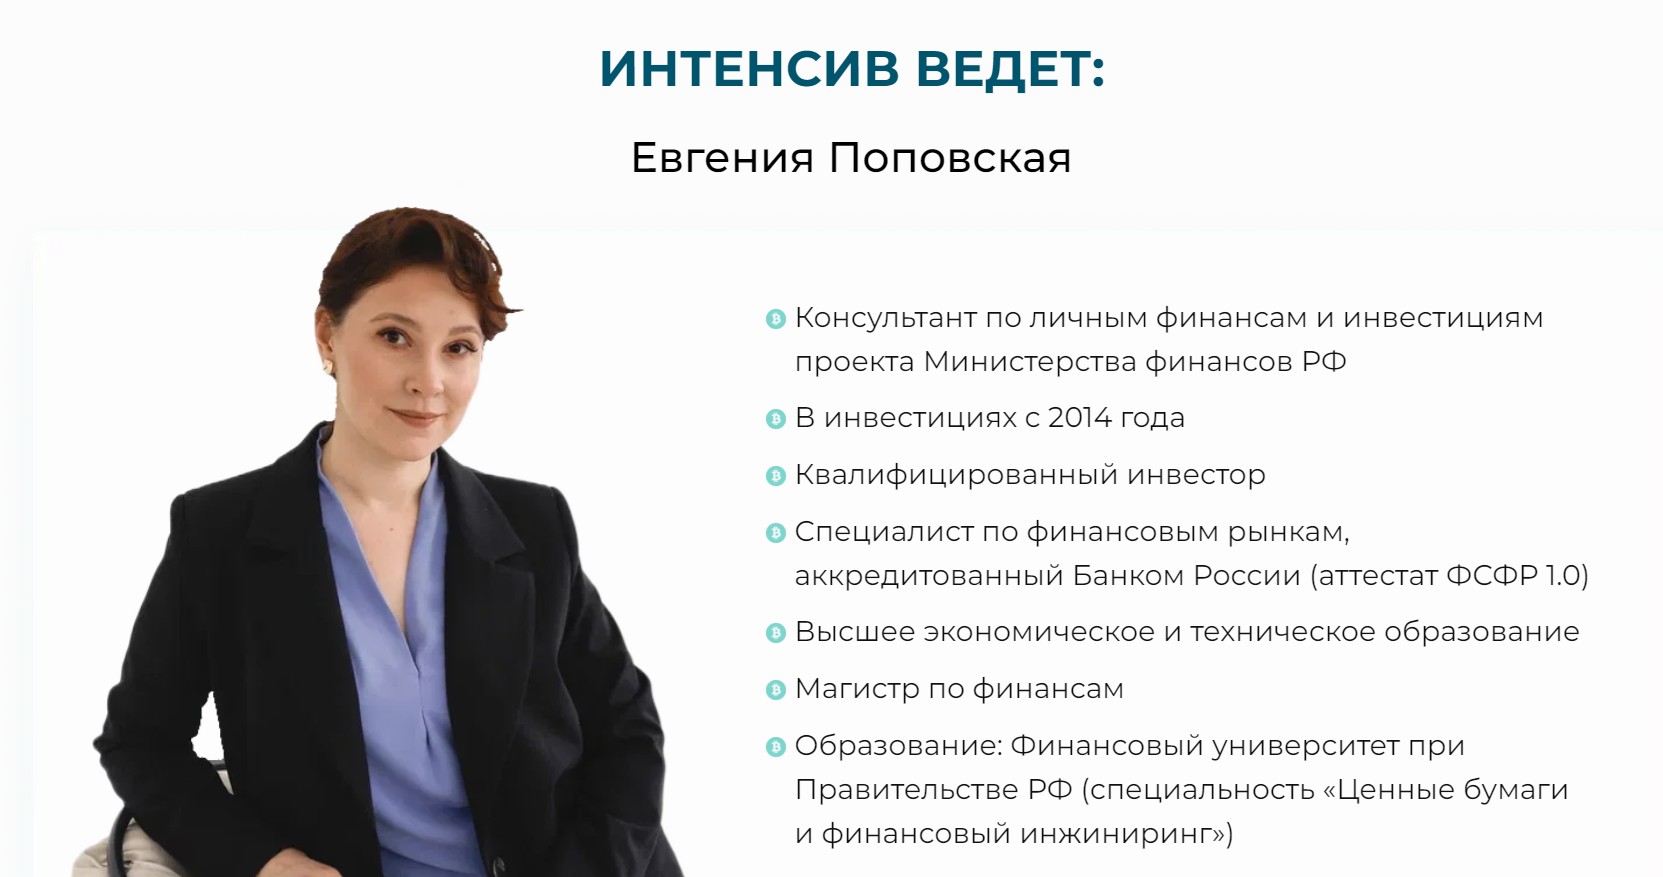 Школа инвестора Евгении Поповской обзор